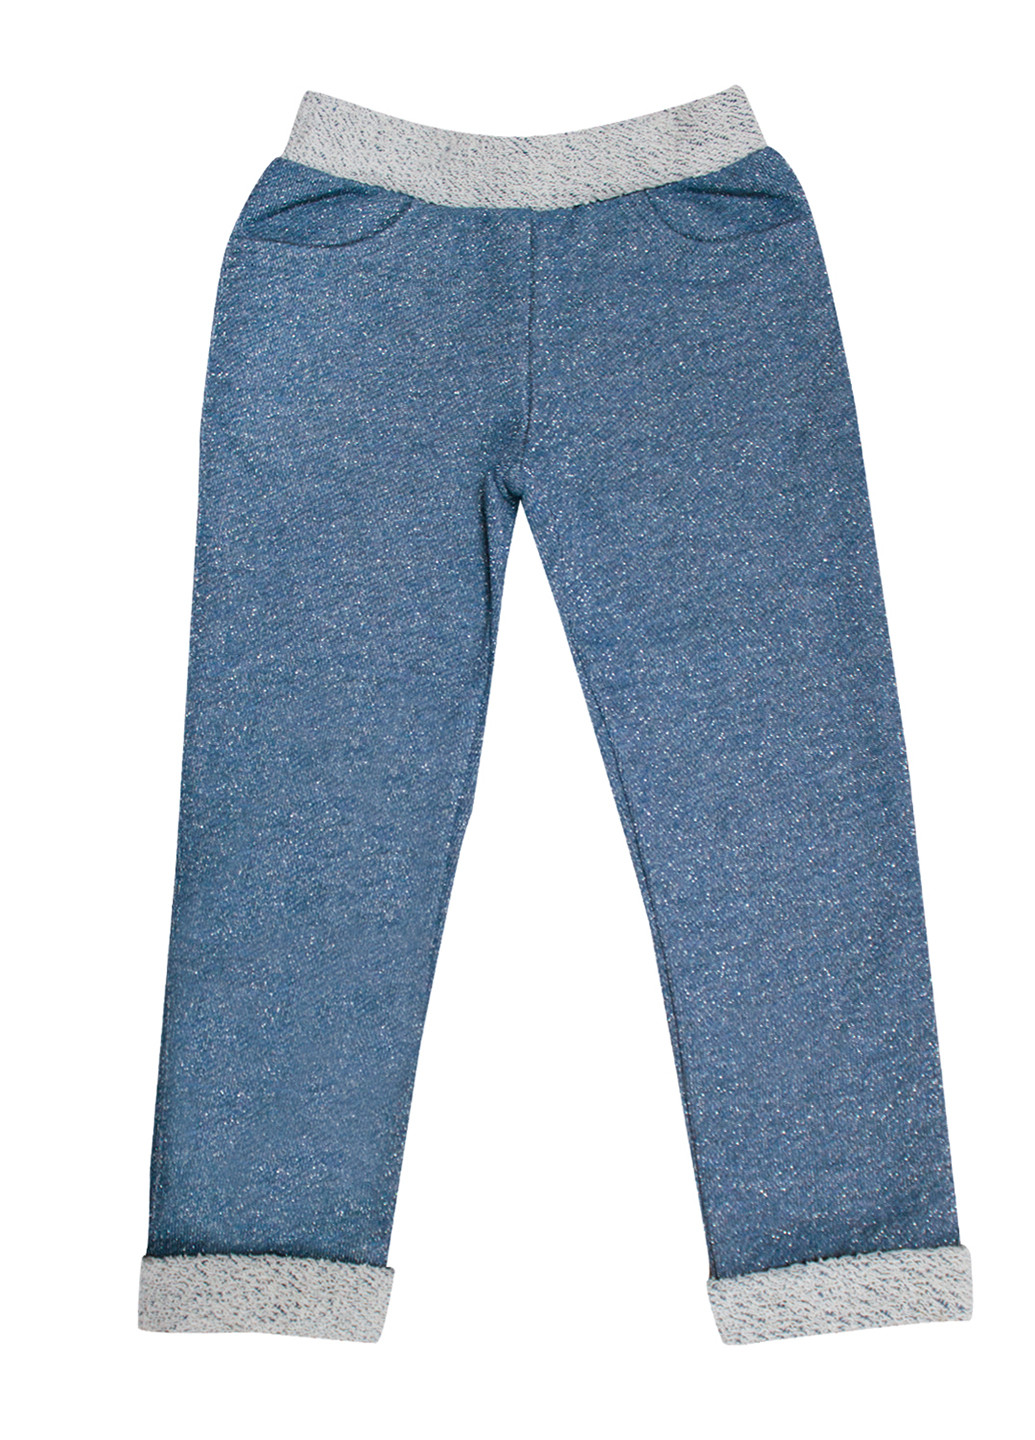 Светло-синие кэжуал демисезонные со средней талией брюки Смил